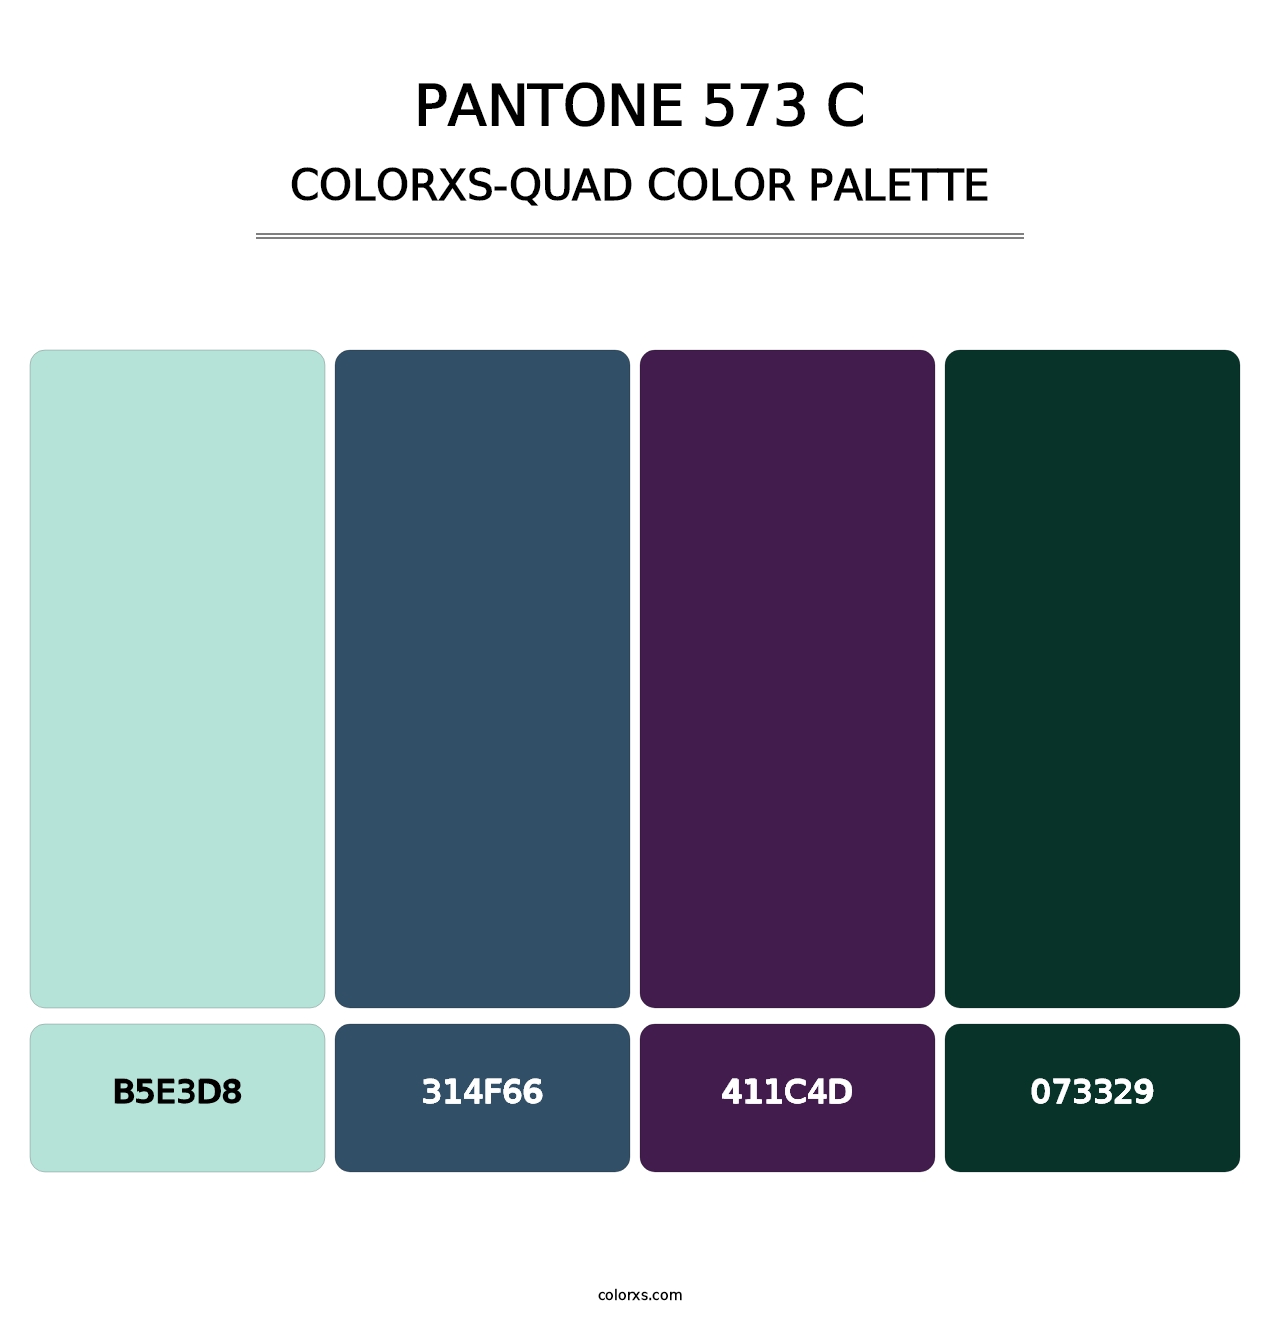 PANTONE 573 C - Colorxs Quad Palette